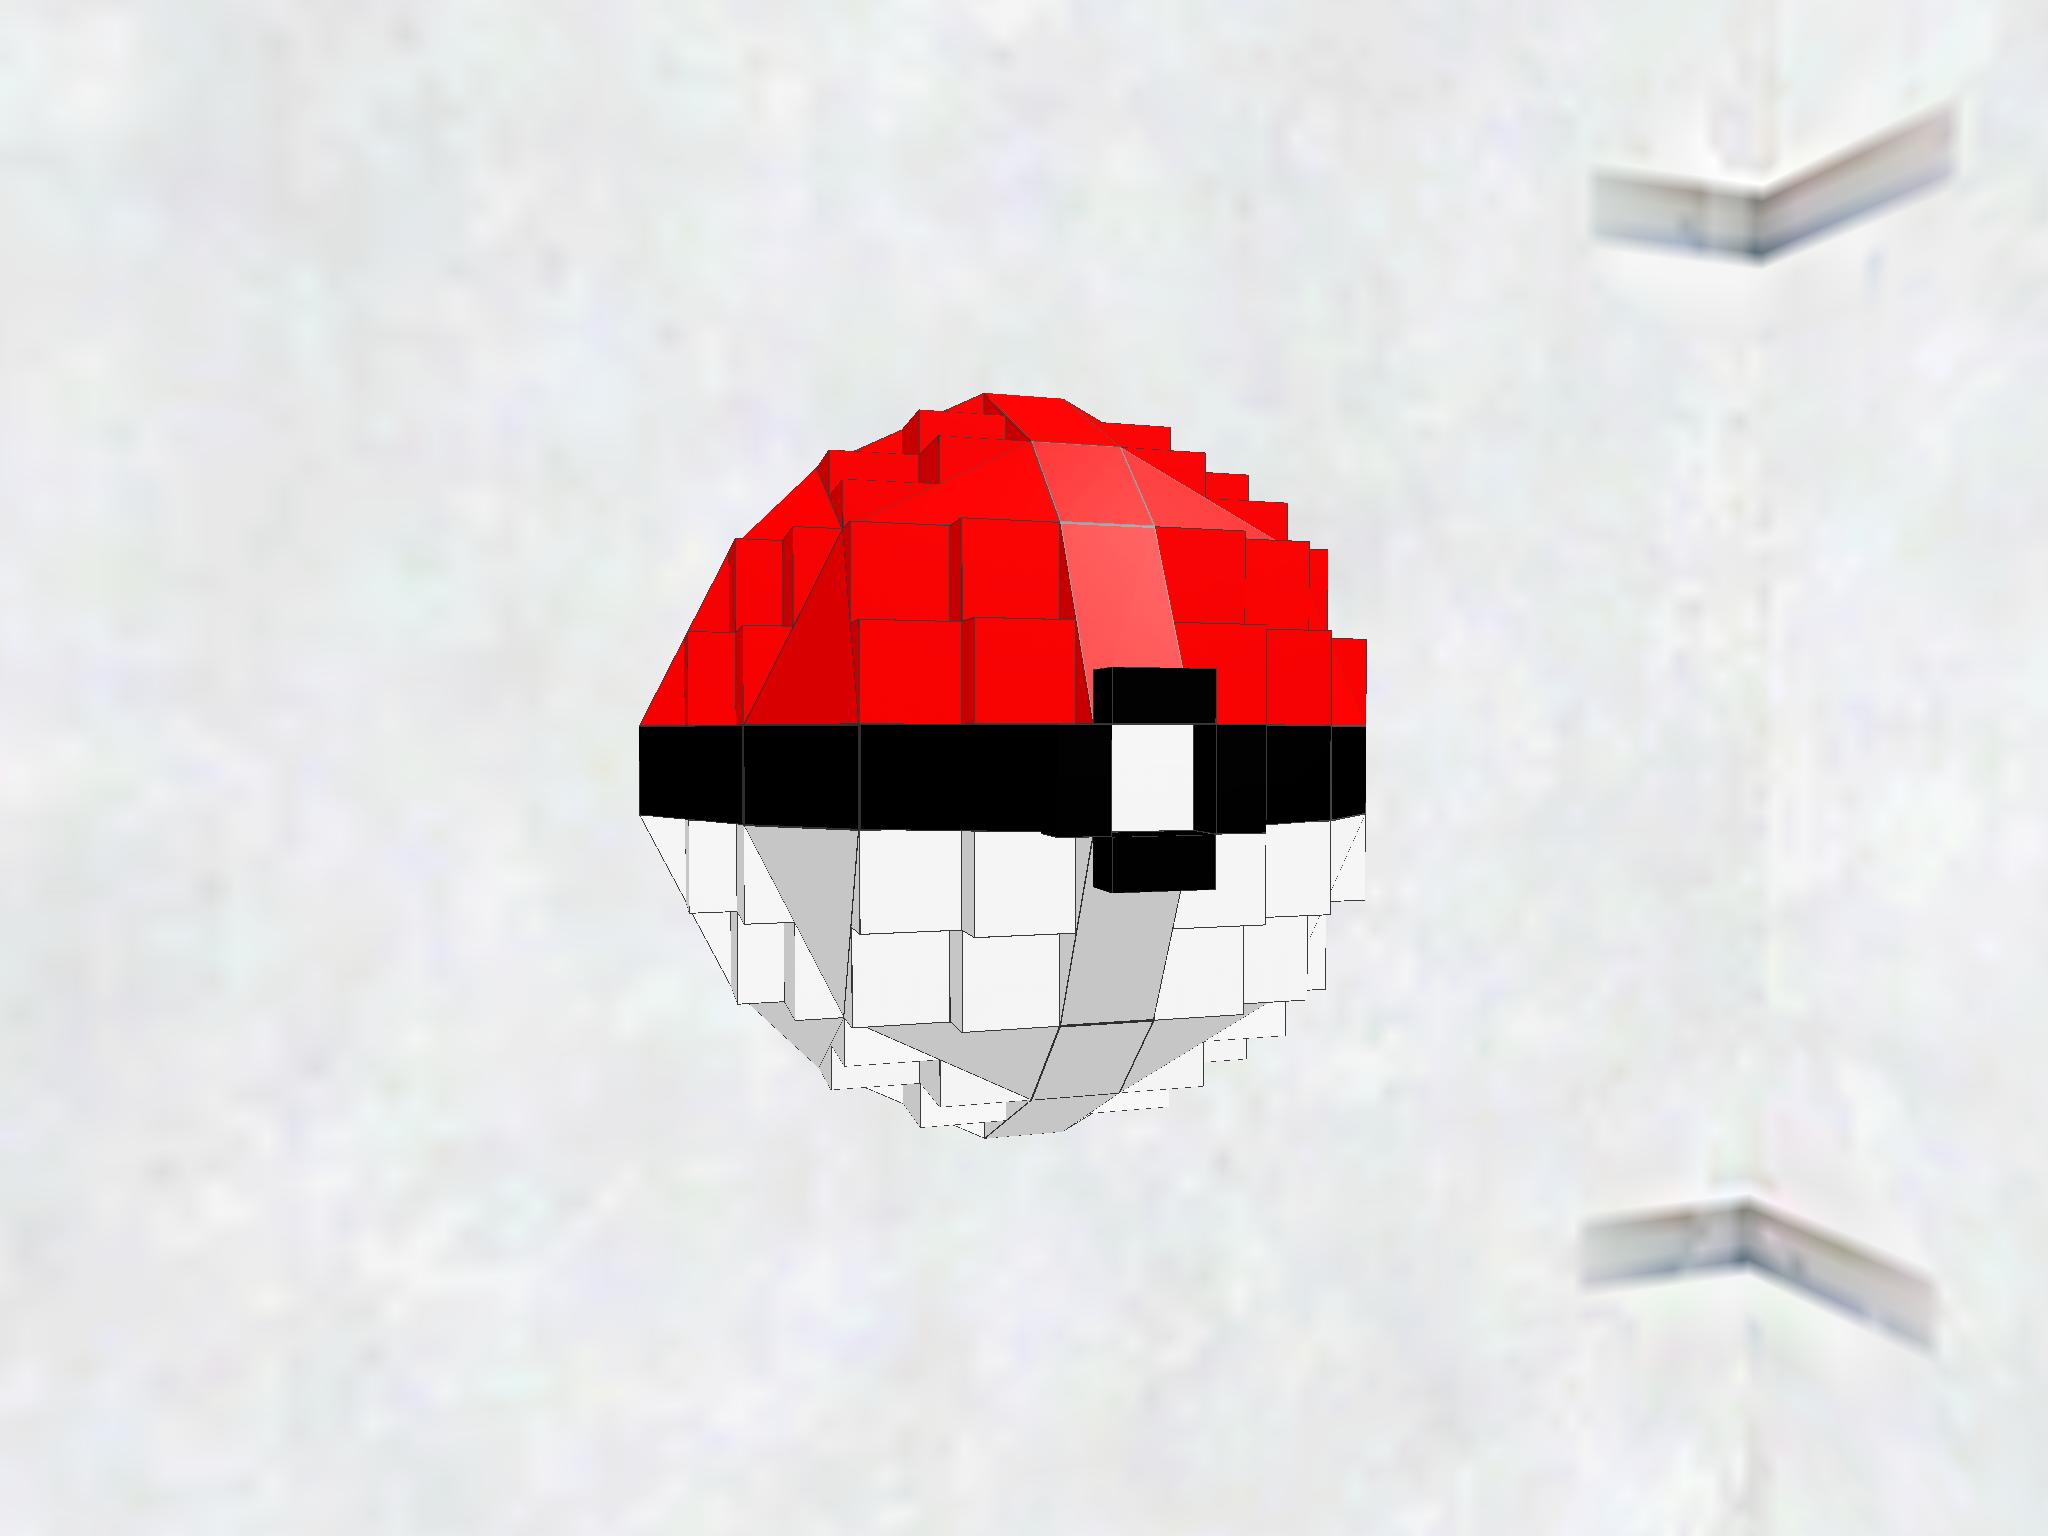 某モンスター系アニメの例のボール